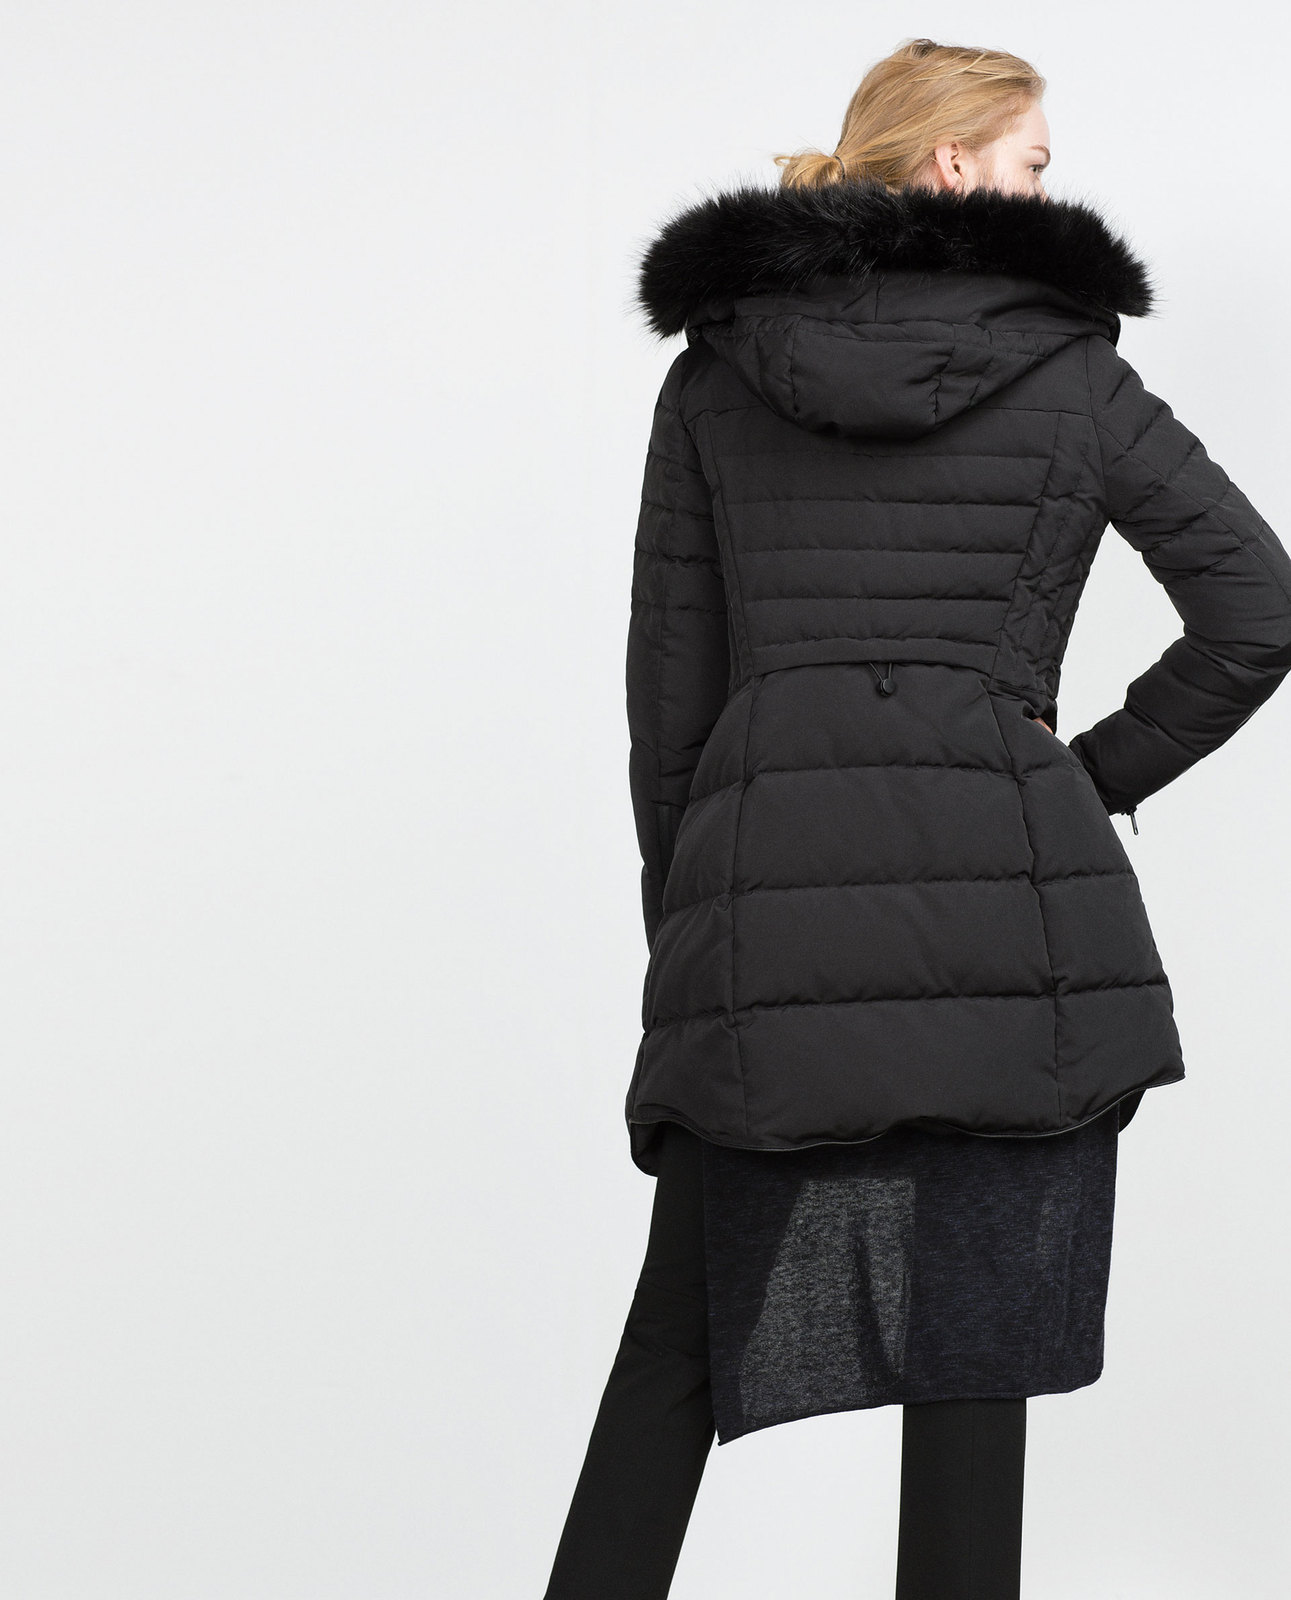 Zara fekete levehető szőrmés-kapucnis anorák 2015.10.15 fotója